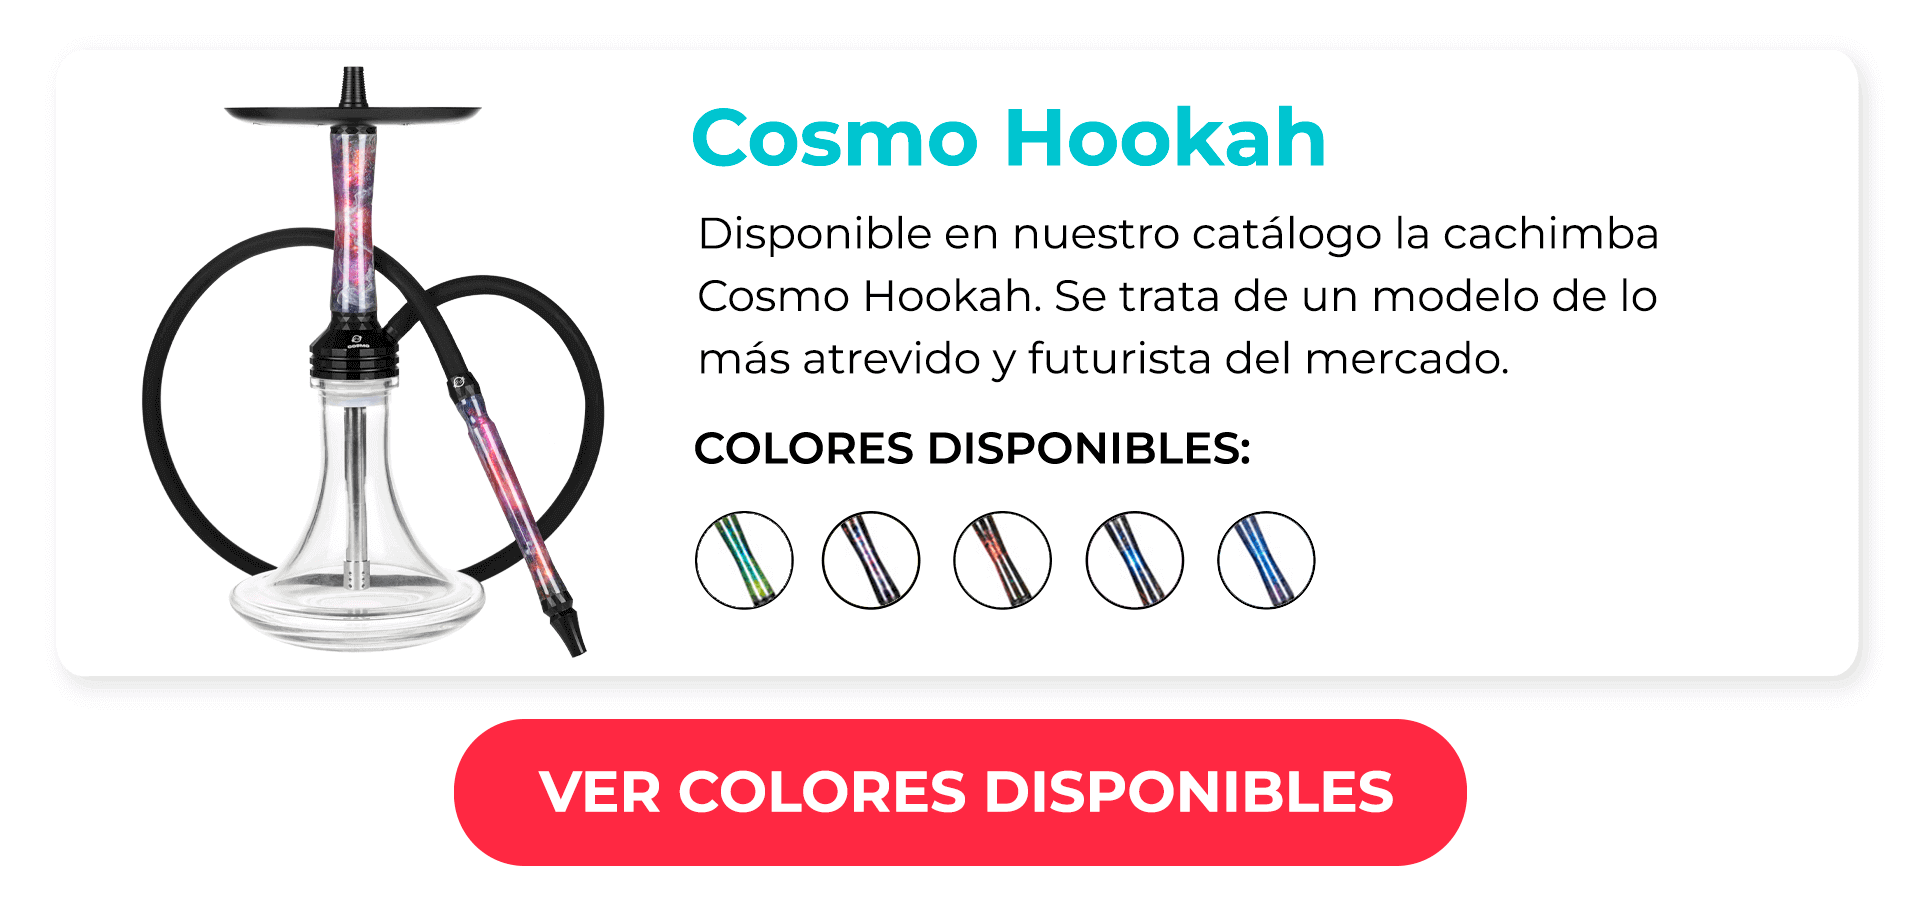 Cosmo Hookah